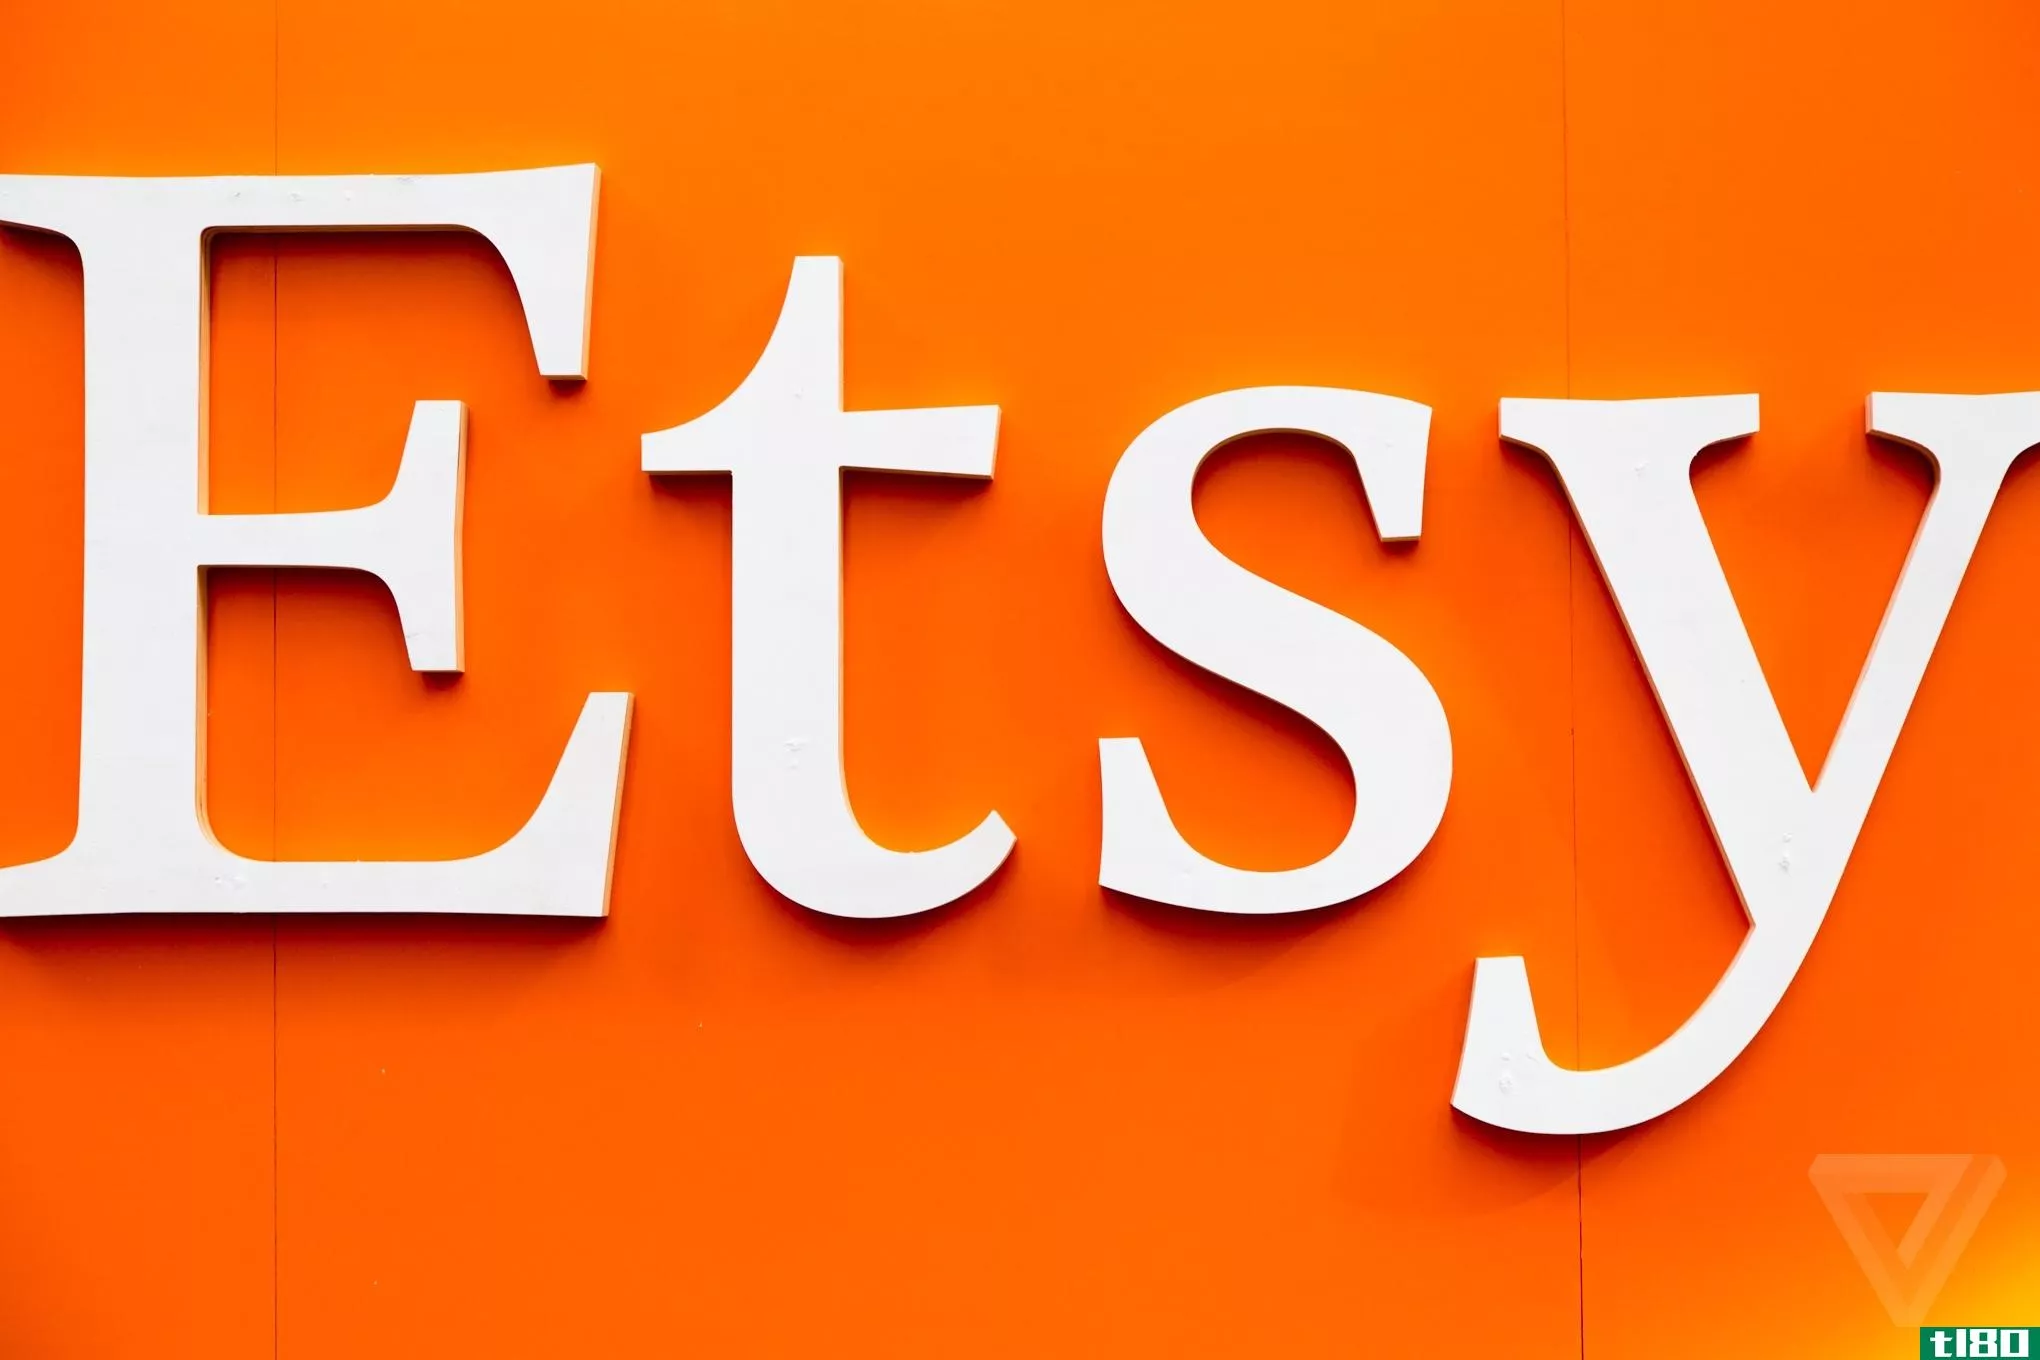 etsy告诉卖家，它将为他们的商品做广告，并从中大幅度减价